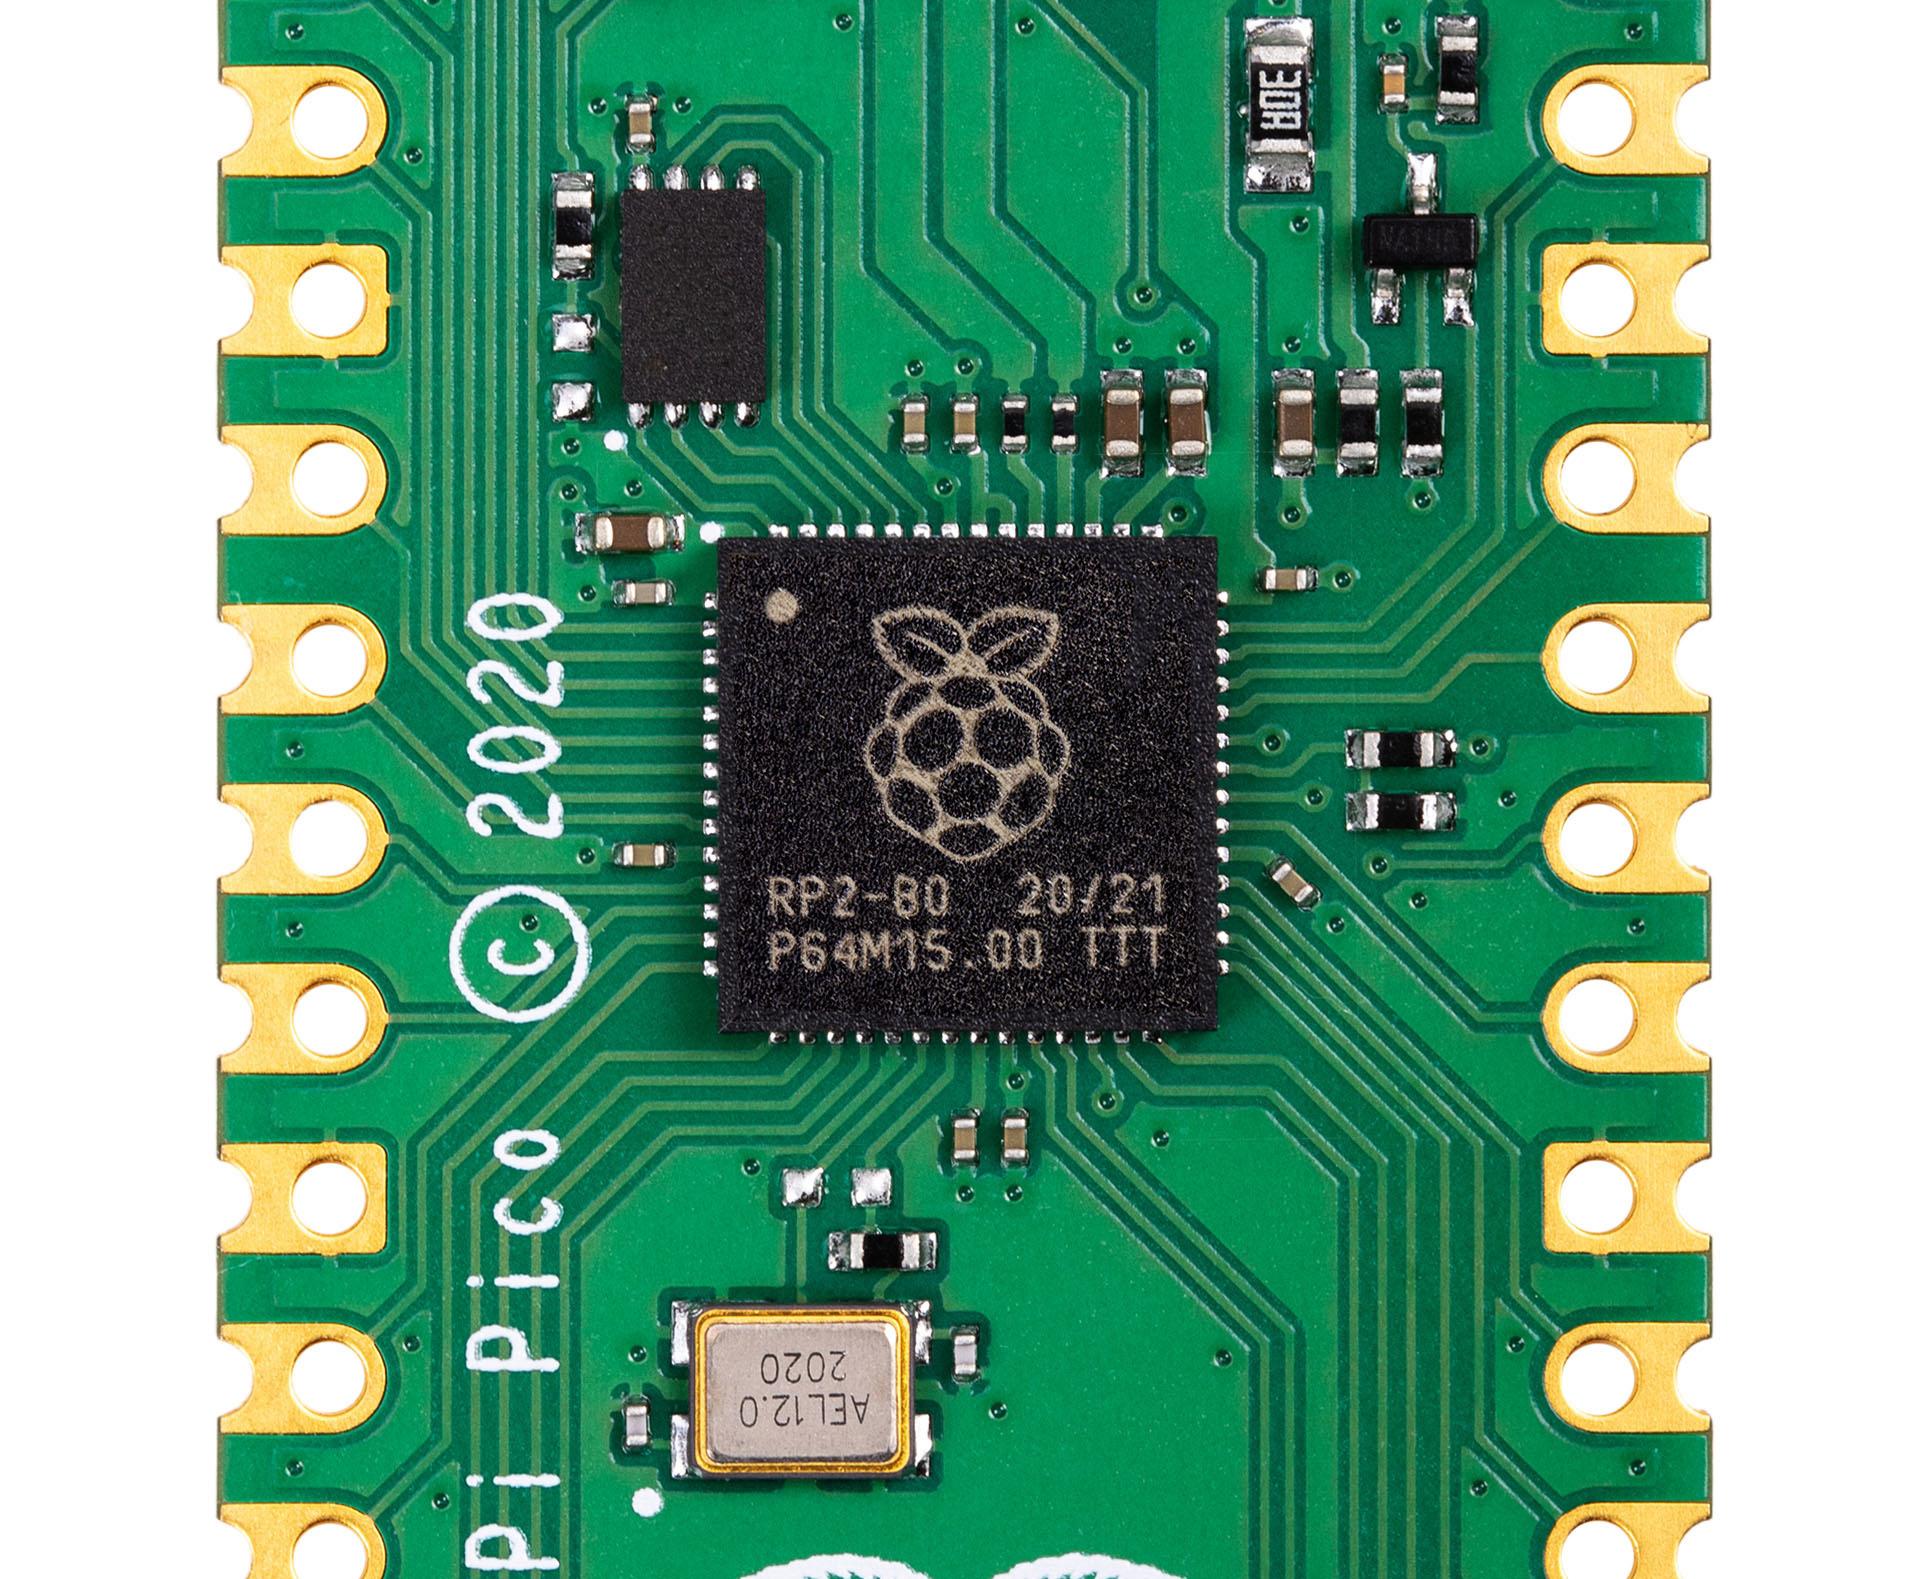 De Raspberry Pi Pico steunt op de eigen RP2040 chip.